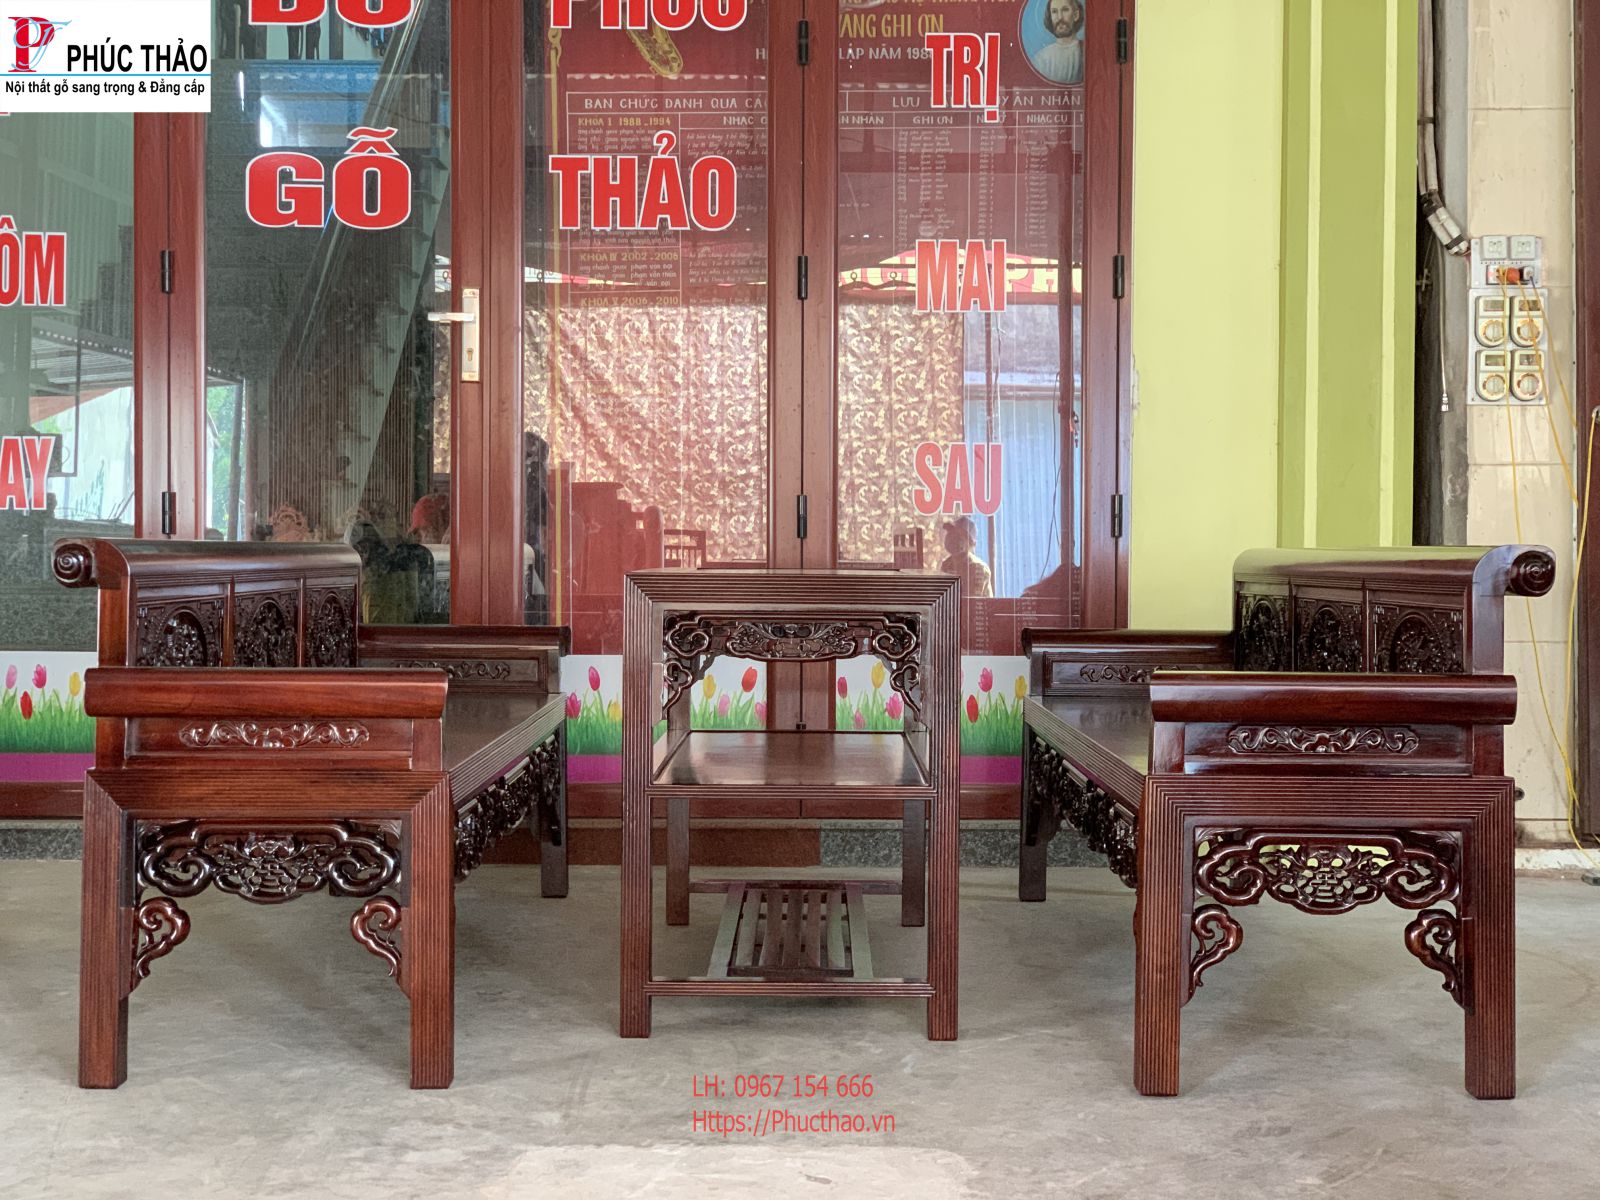 Phucthao.vn Cơ sở bán trường kỷ gỗ đẹp, chất lượng tại Ninh Thuận